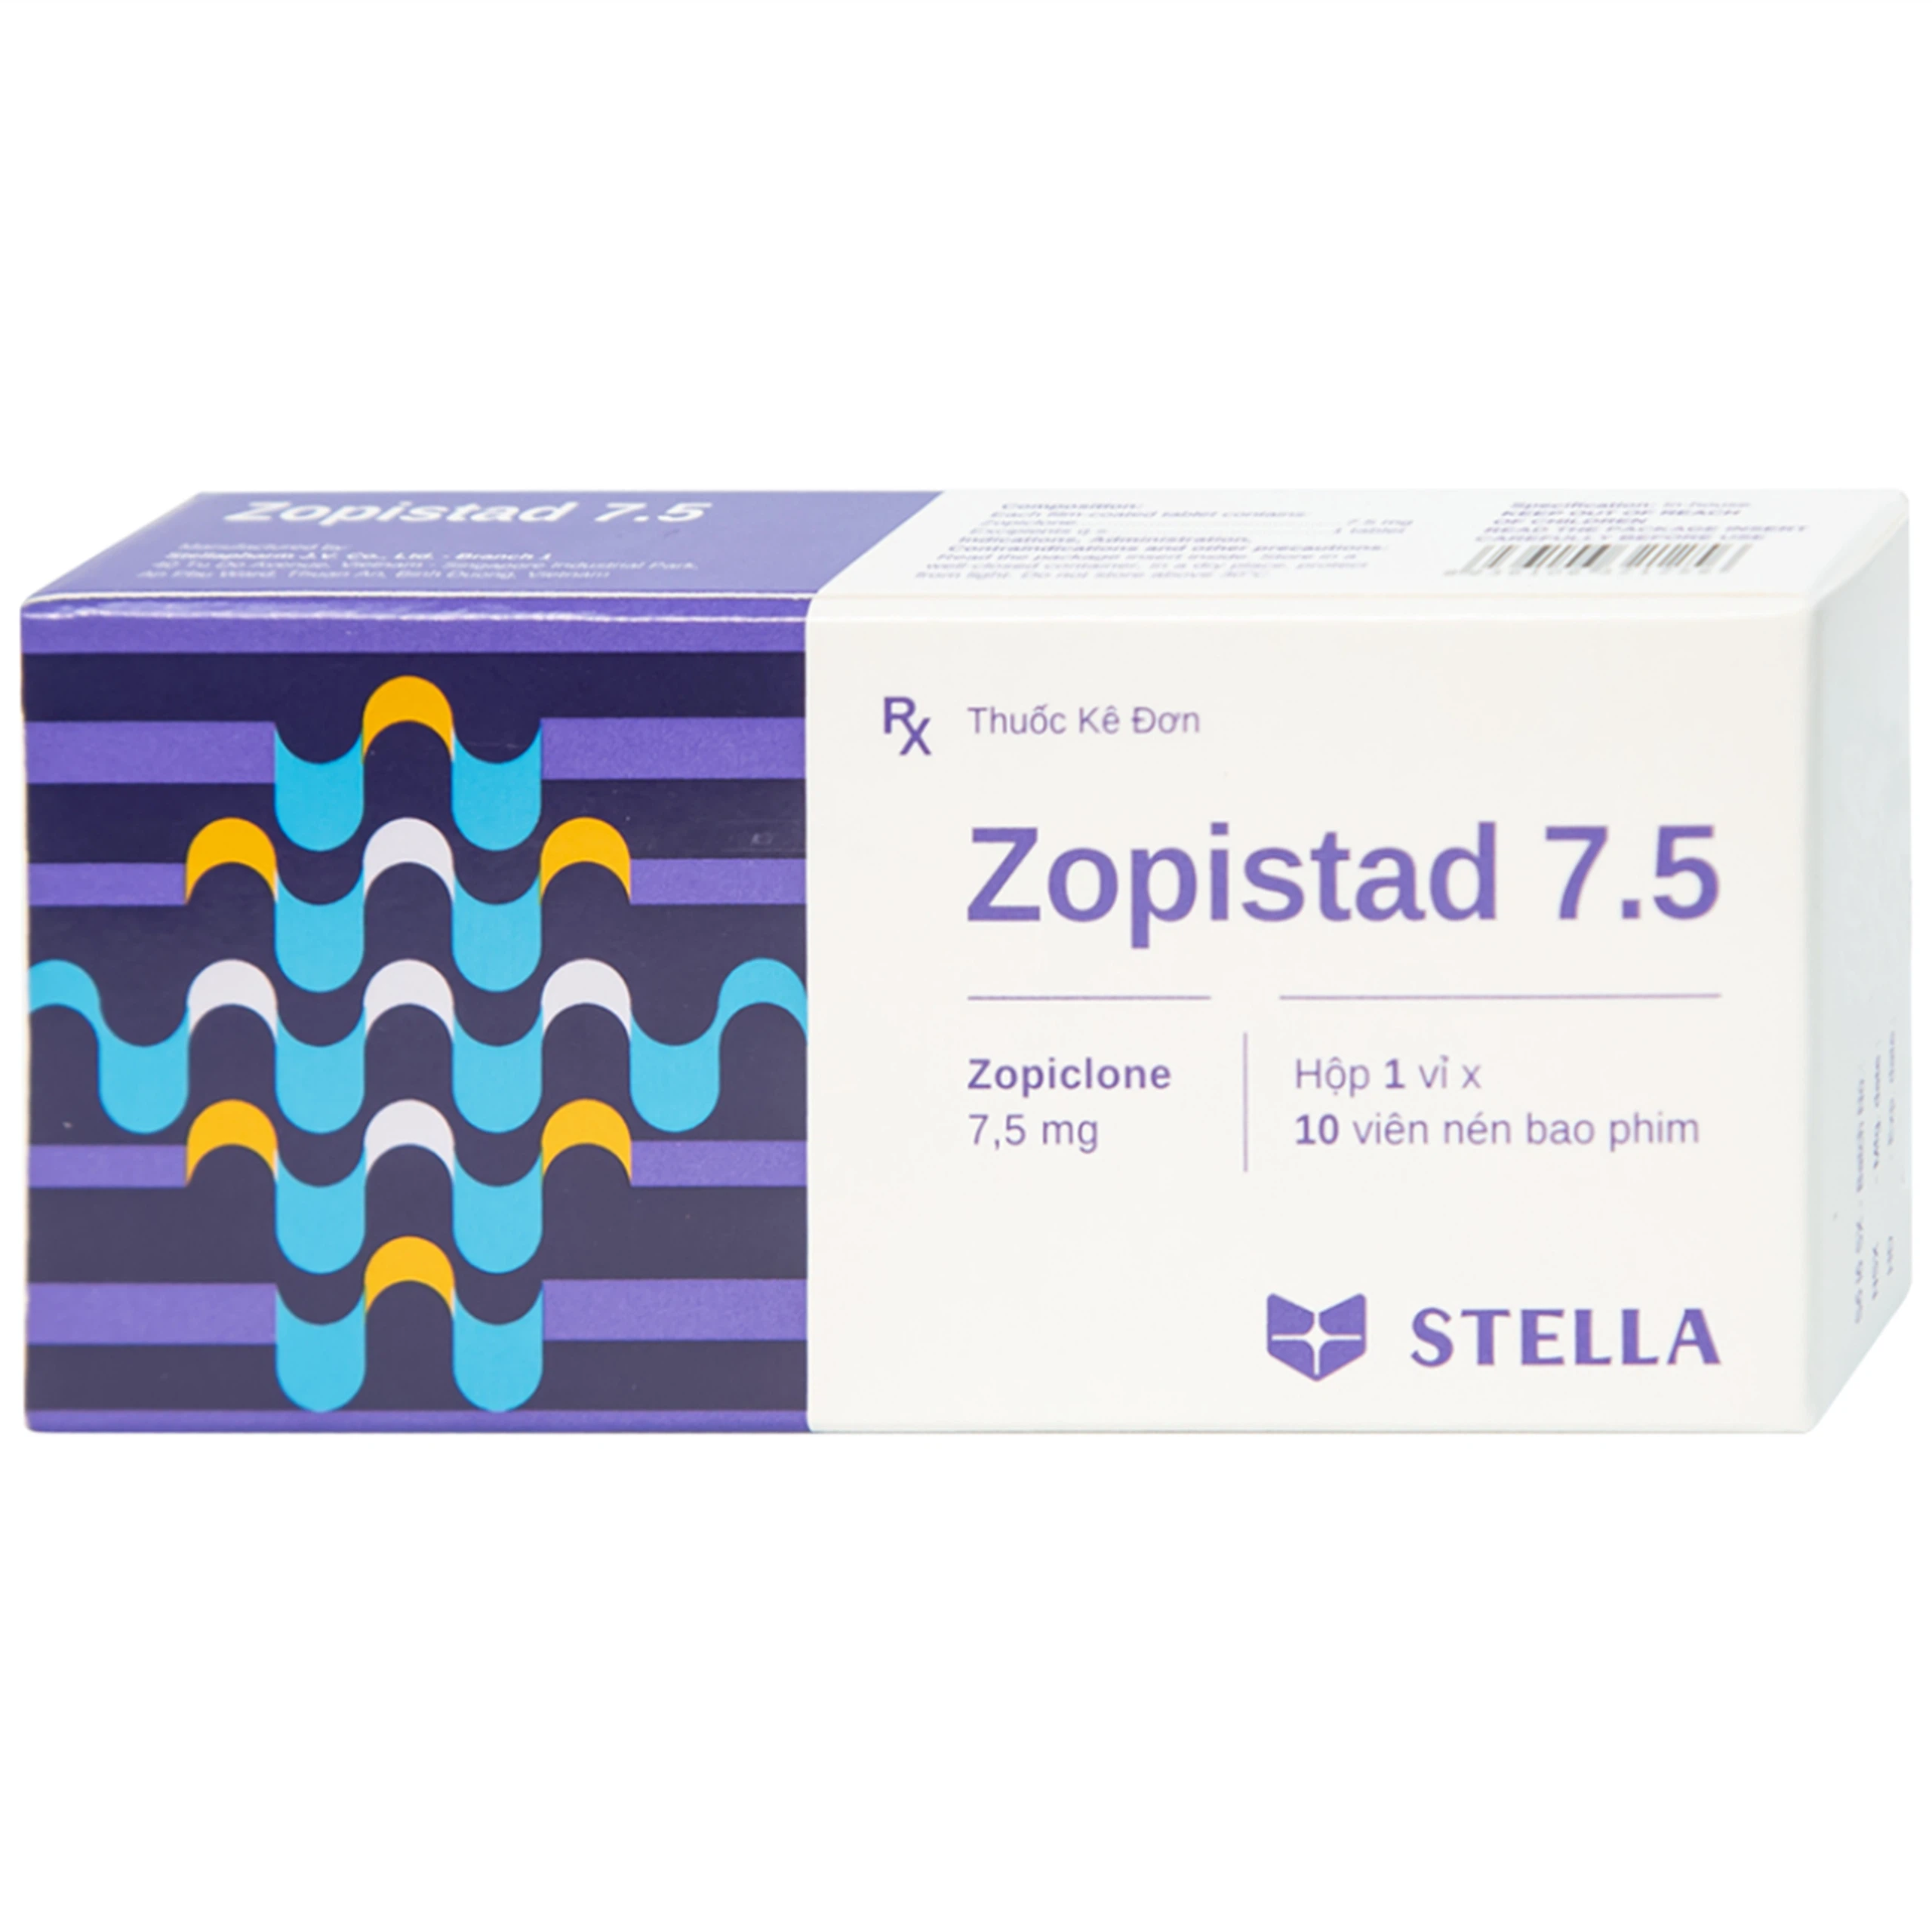 Thuốc Zopistad 7.5 Stella hỗ trợ điều trị ngắn hạn chứng mất ngủ (1 vỉ x 10 viên)